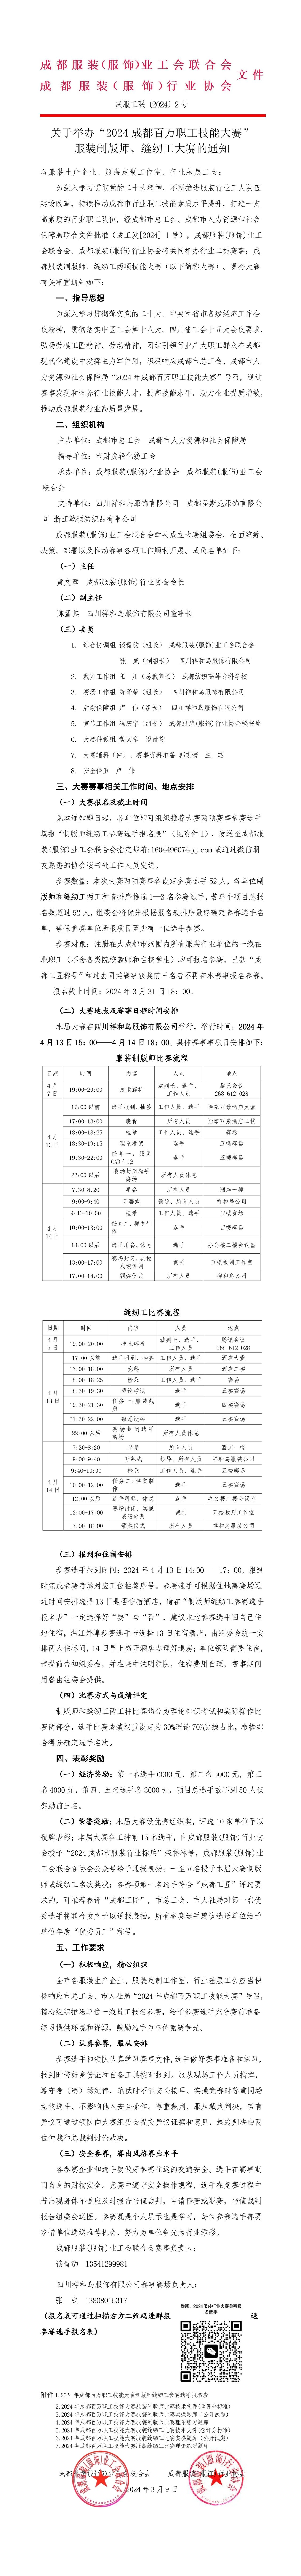 张爽+3.26+成南公司成都管理处组织召开扩容施工联勤会2.jpg